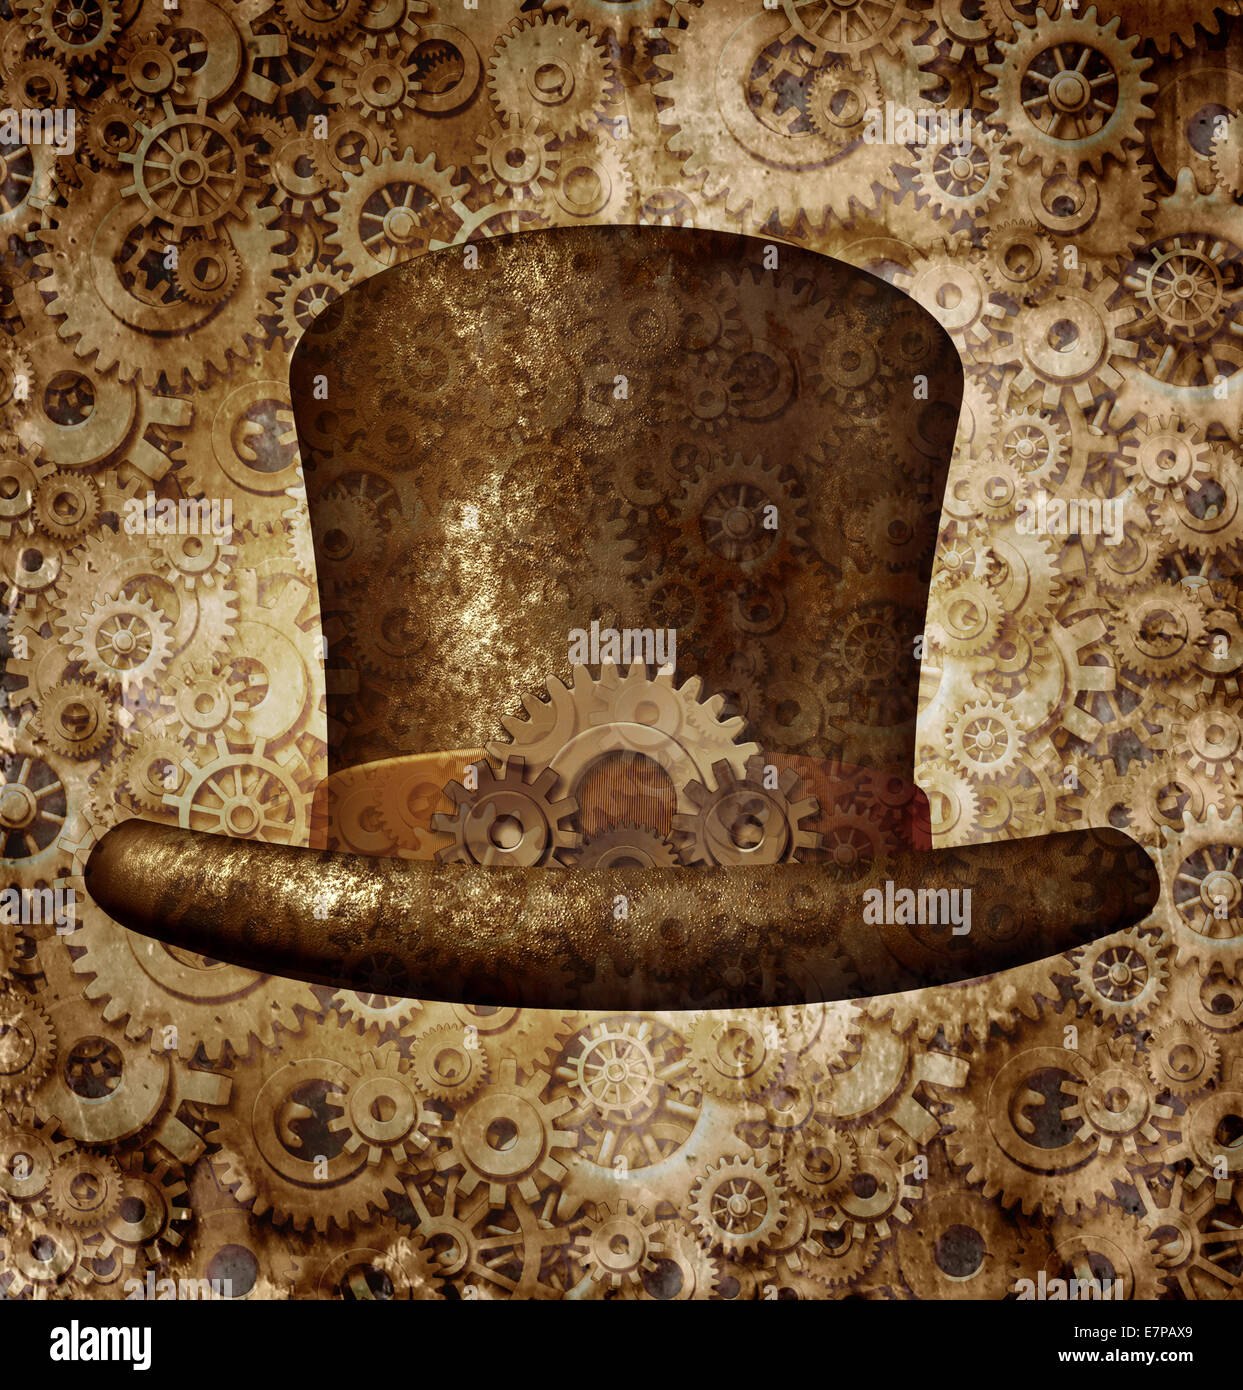 Steampunk top hat como un concepto de ciencia ficción hecha de metal y engranajes engranajes usando un retro victoriano histórico jefe accesorio como un símbolo de tecnología futurista máquina ficticia híbrido. Foto de stock